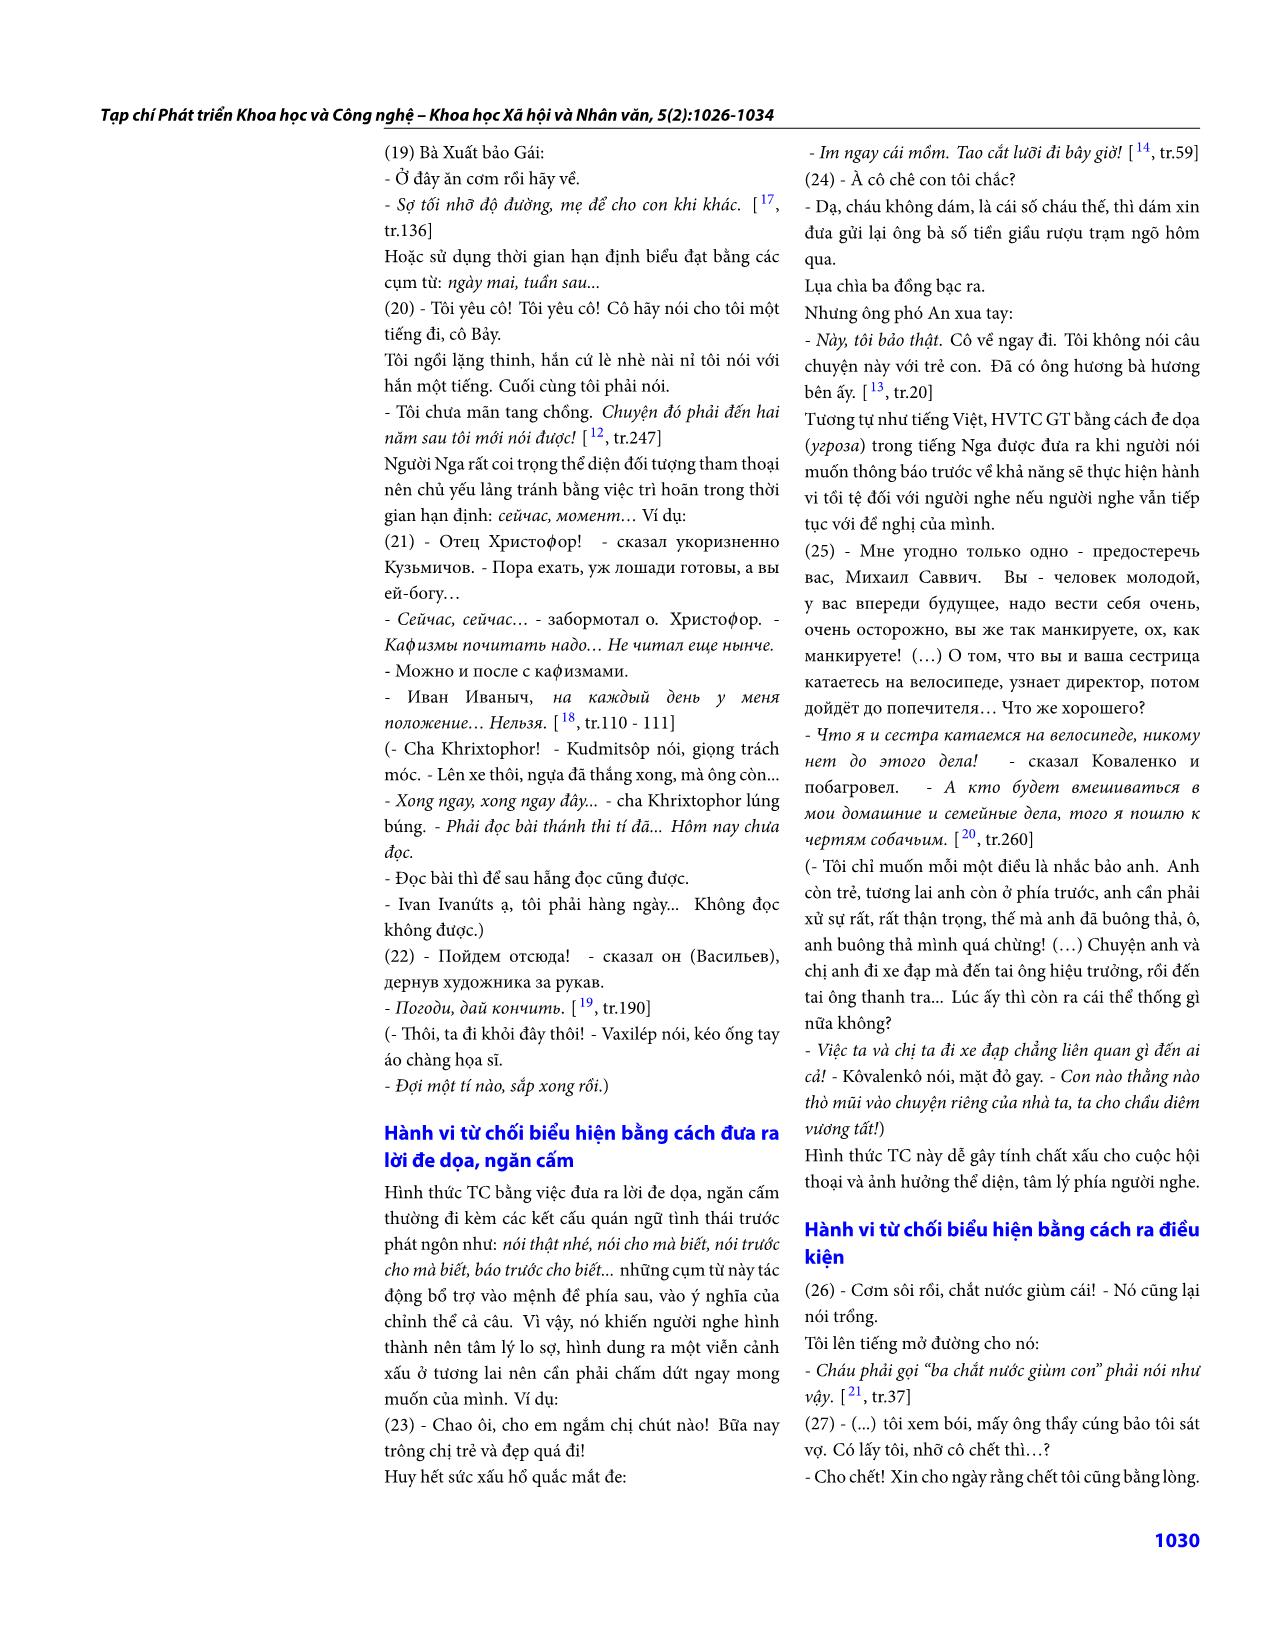 Những biểu hiện của hành vi từ chối gián tiếp trong tiếng Việt (có so với tiếng Nga) trang 5